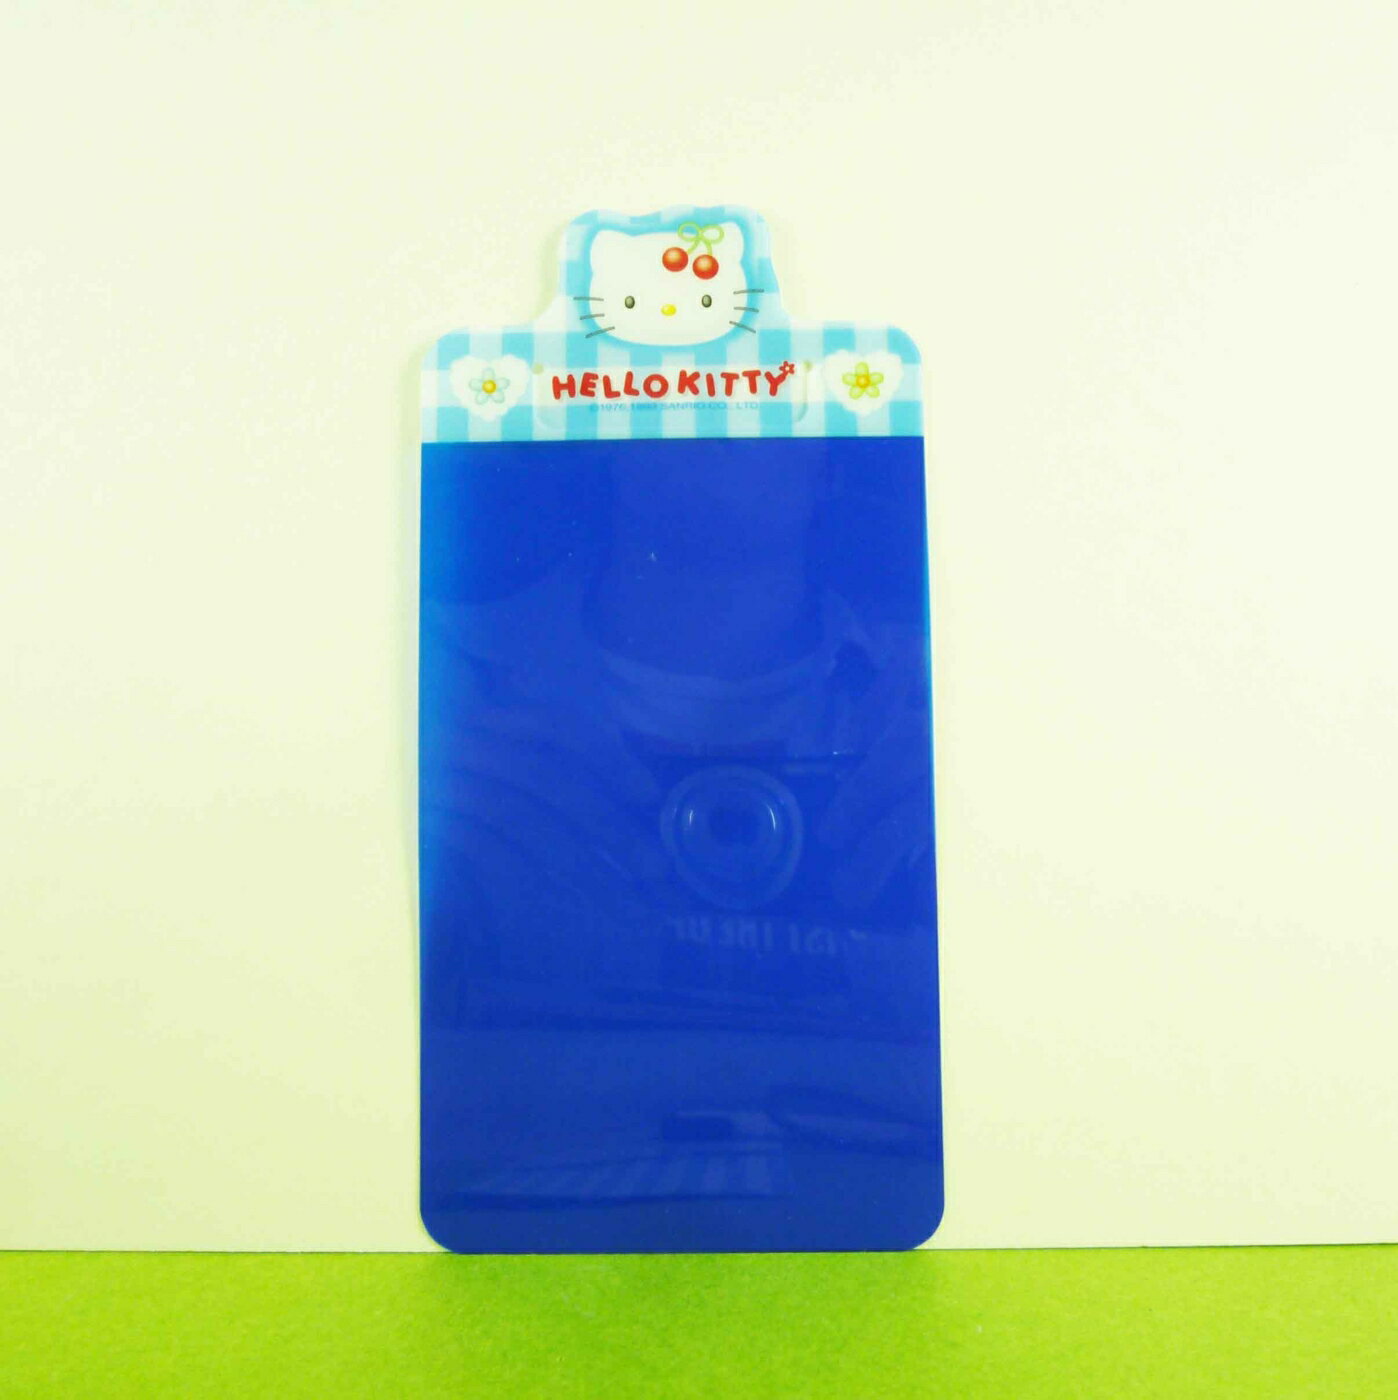 【震撼精品百貨】Hello Kitty 凱蒂貓 書籤板組 藍【共1款】 震撼日式精品百貨